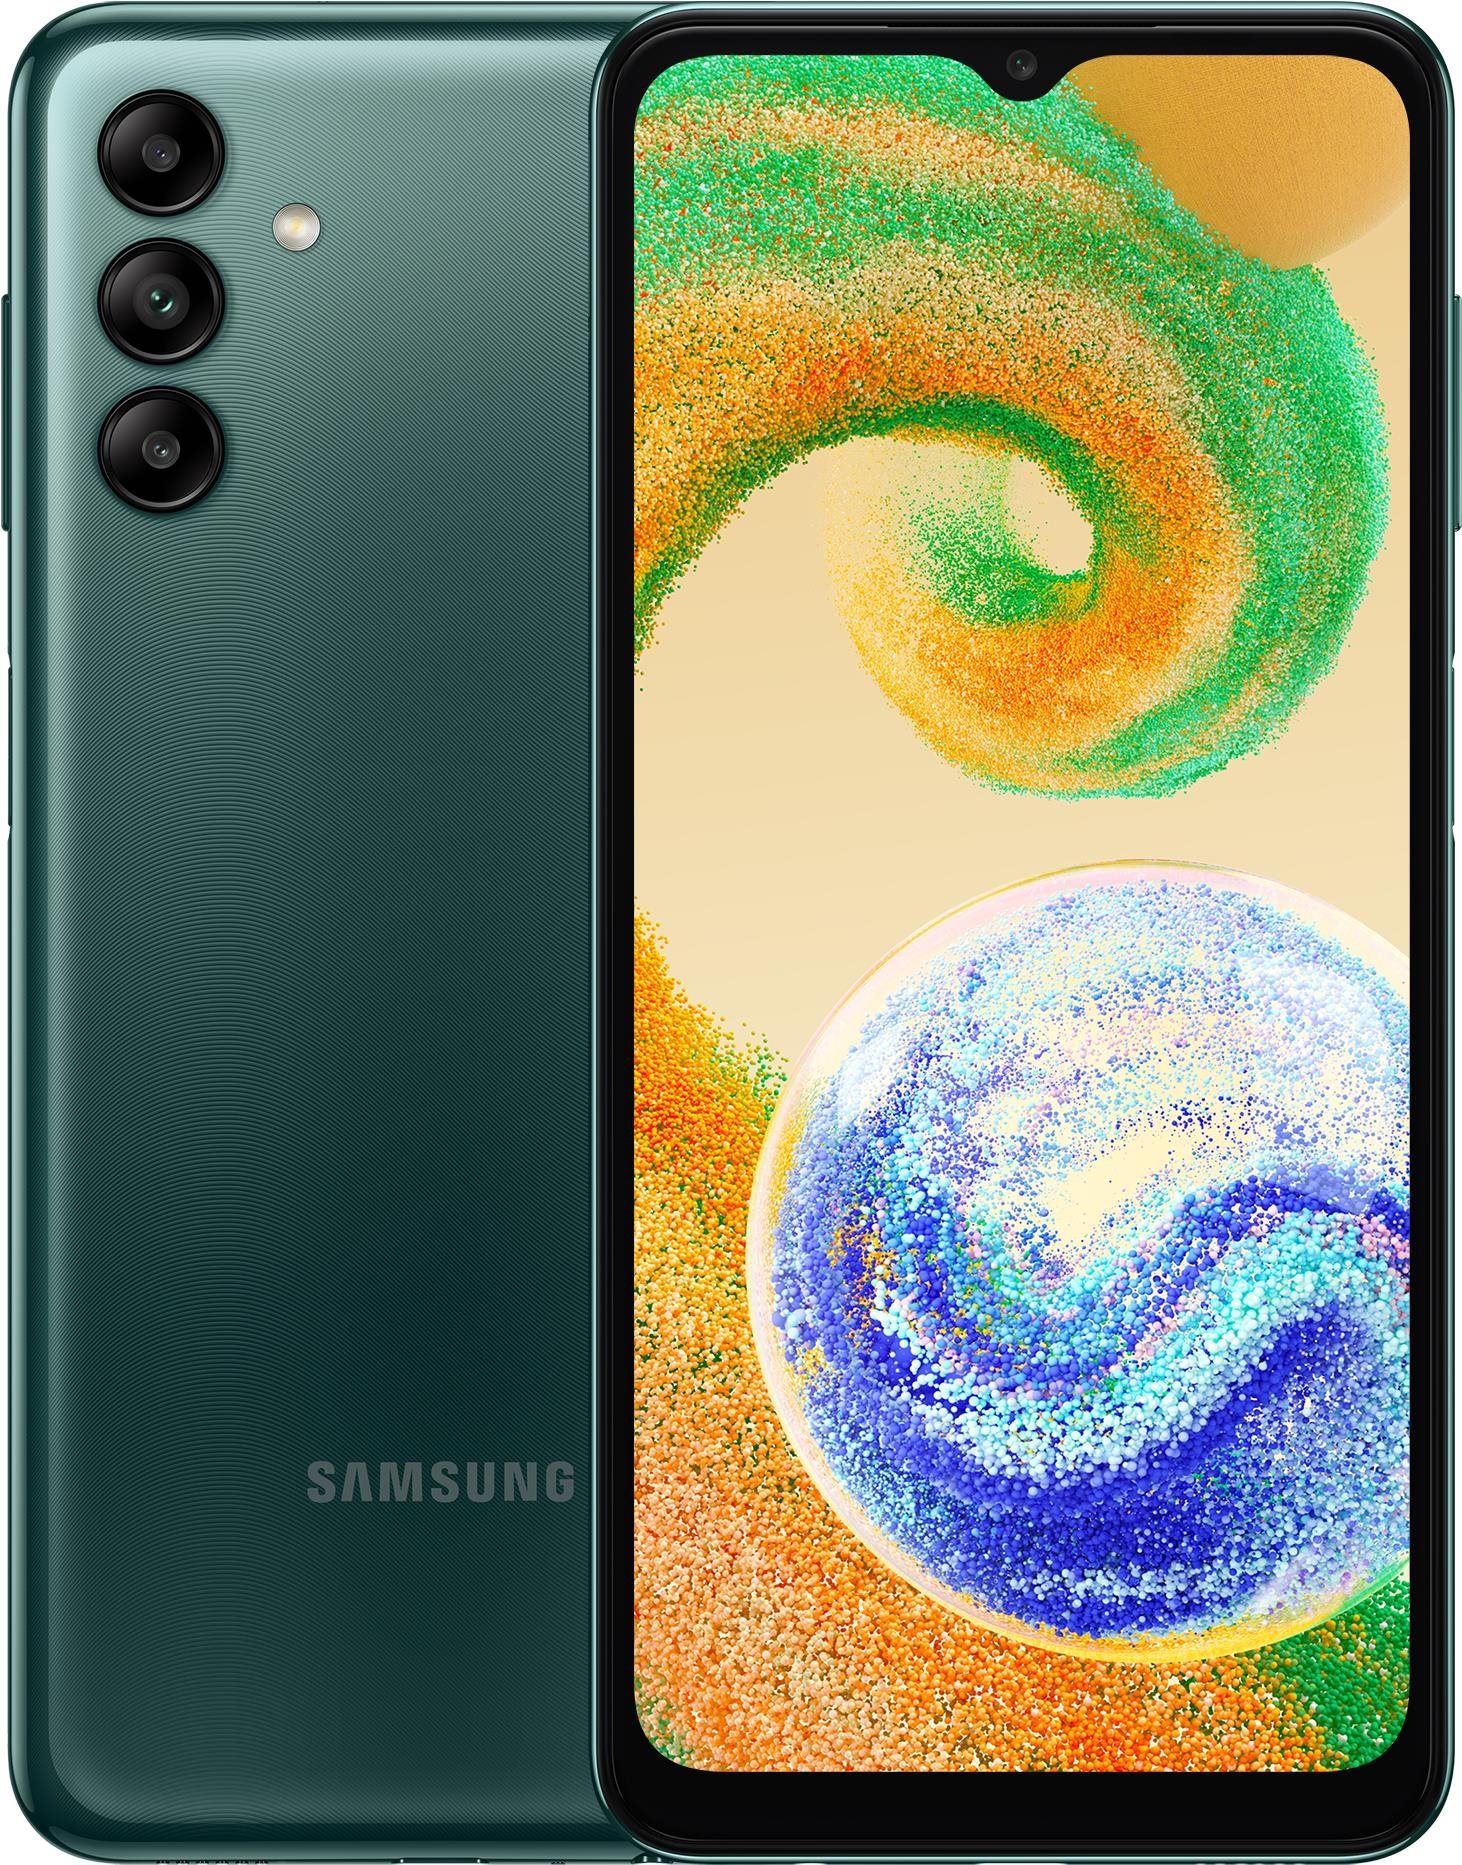 Mobiltelefon Samsung Galaxy A04s 3 GB/32 GB zöld